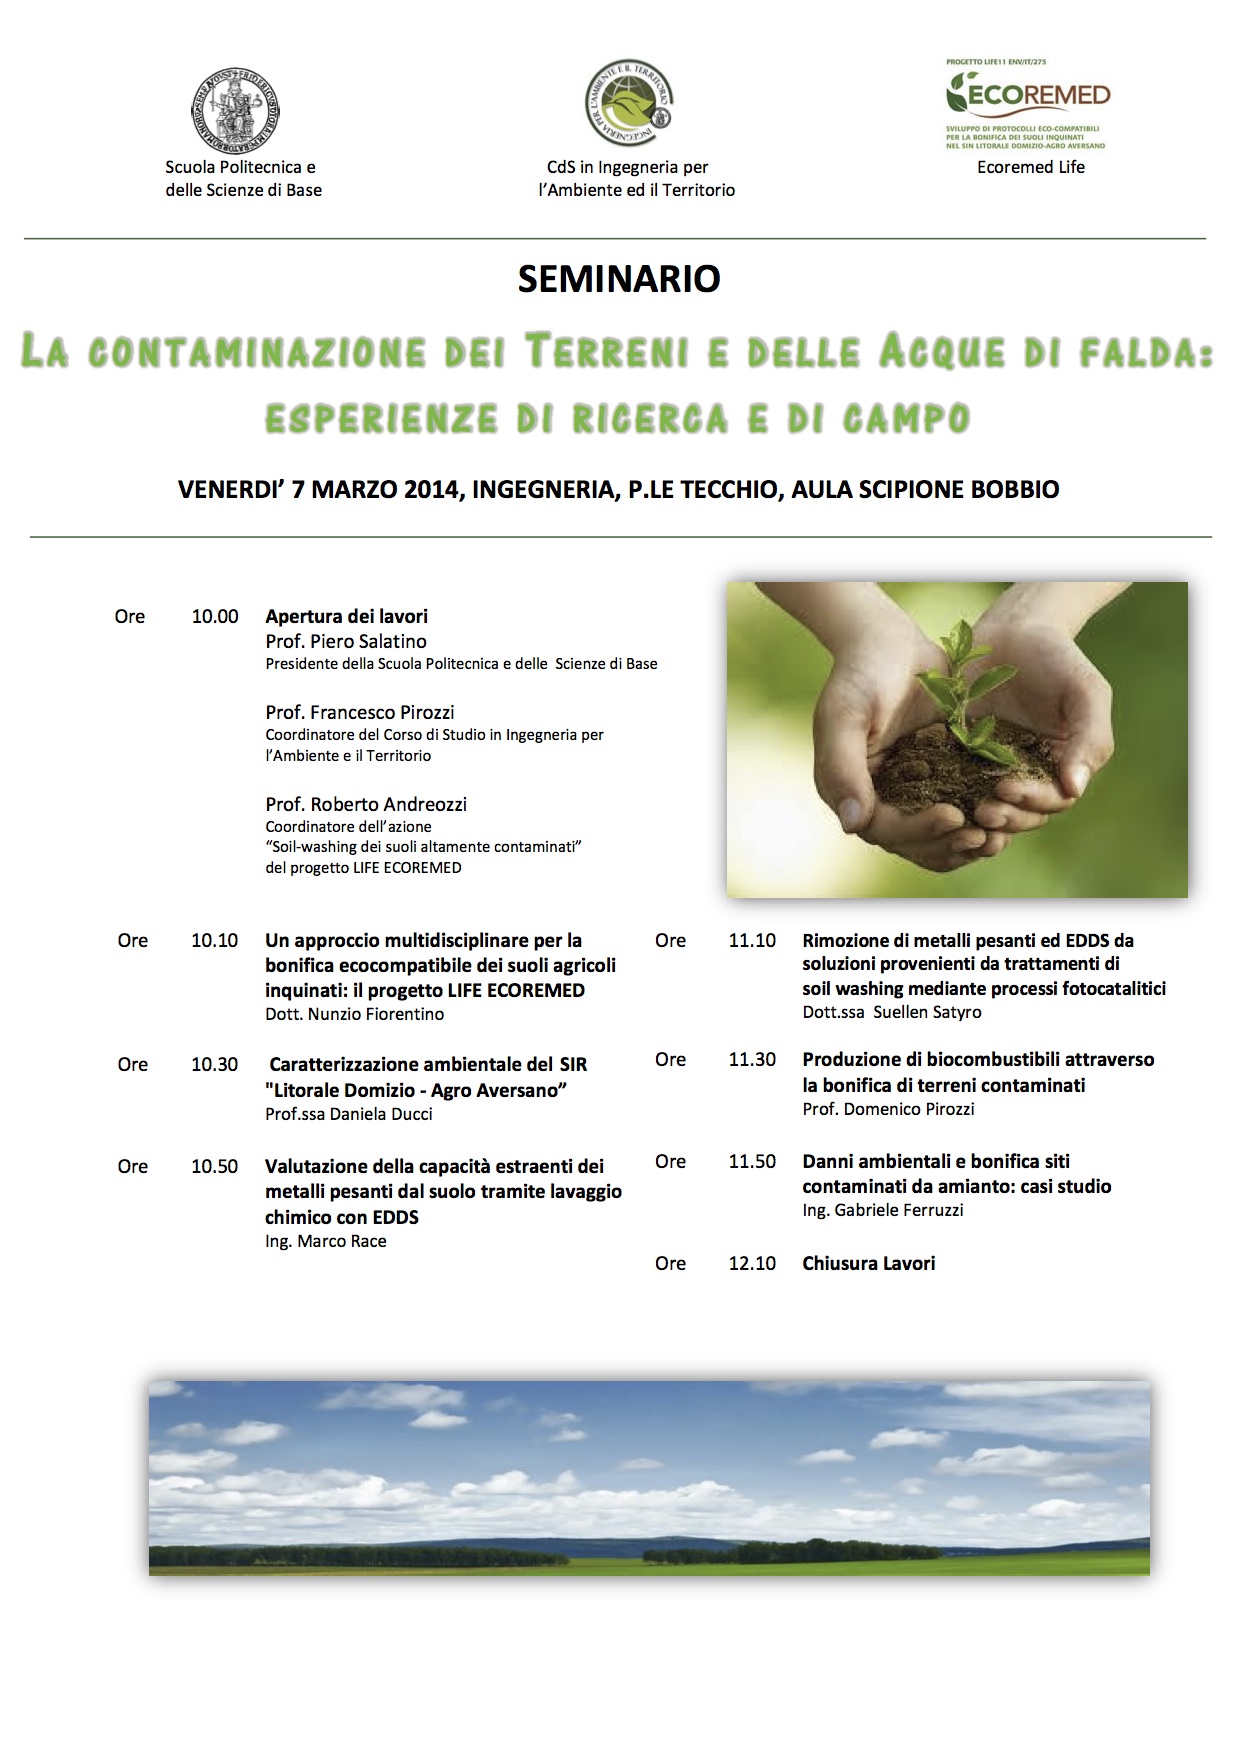 Si terrà il 7 marzo a Napoli presso la Facoltà di Ingegneria all'Aula Scipione Bobbio un seminario sul tema dell'inquinamento e della contaminazione di terre e falde acquifere. Interverrà sul tema amianto Gabriele Ferruzzi , presidente Aiea Sez. Napoli.